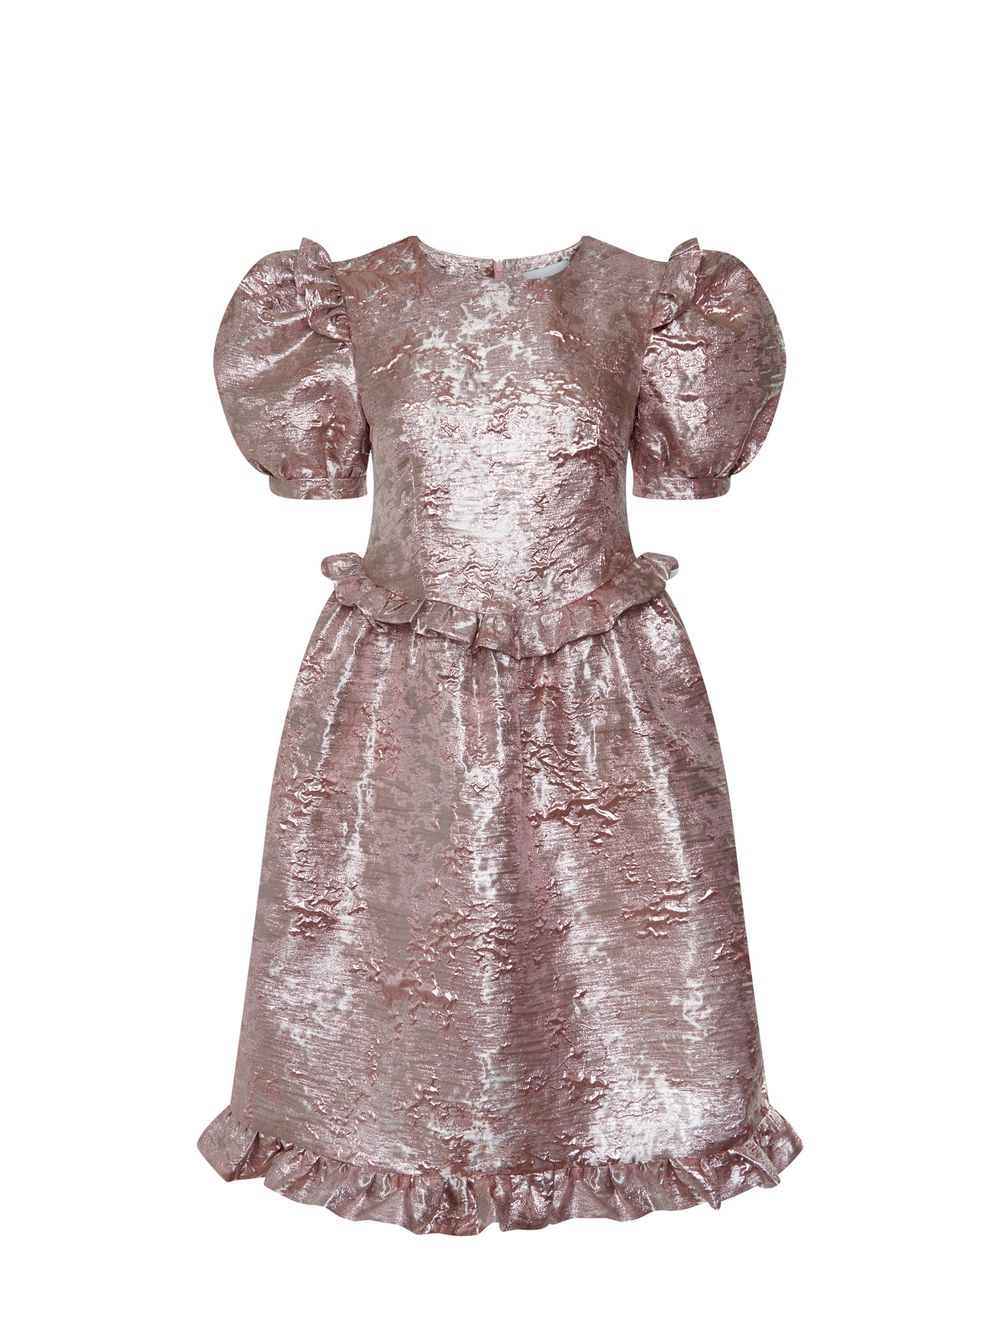 Metallic pink dress